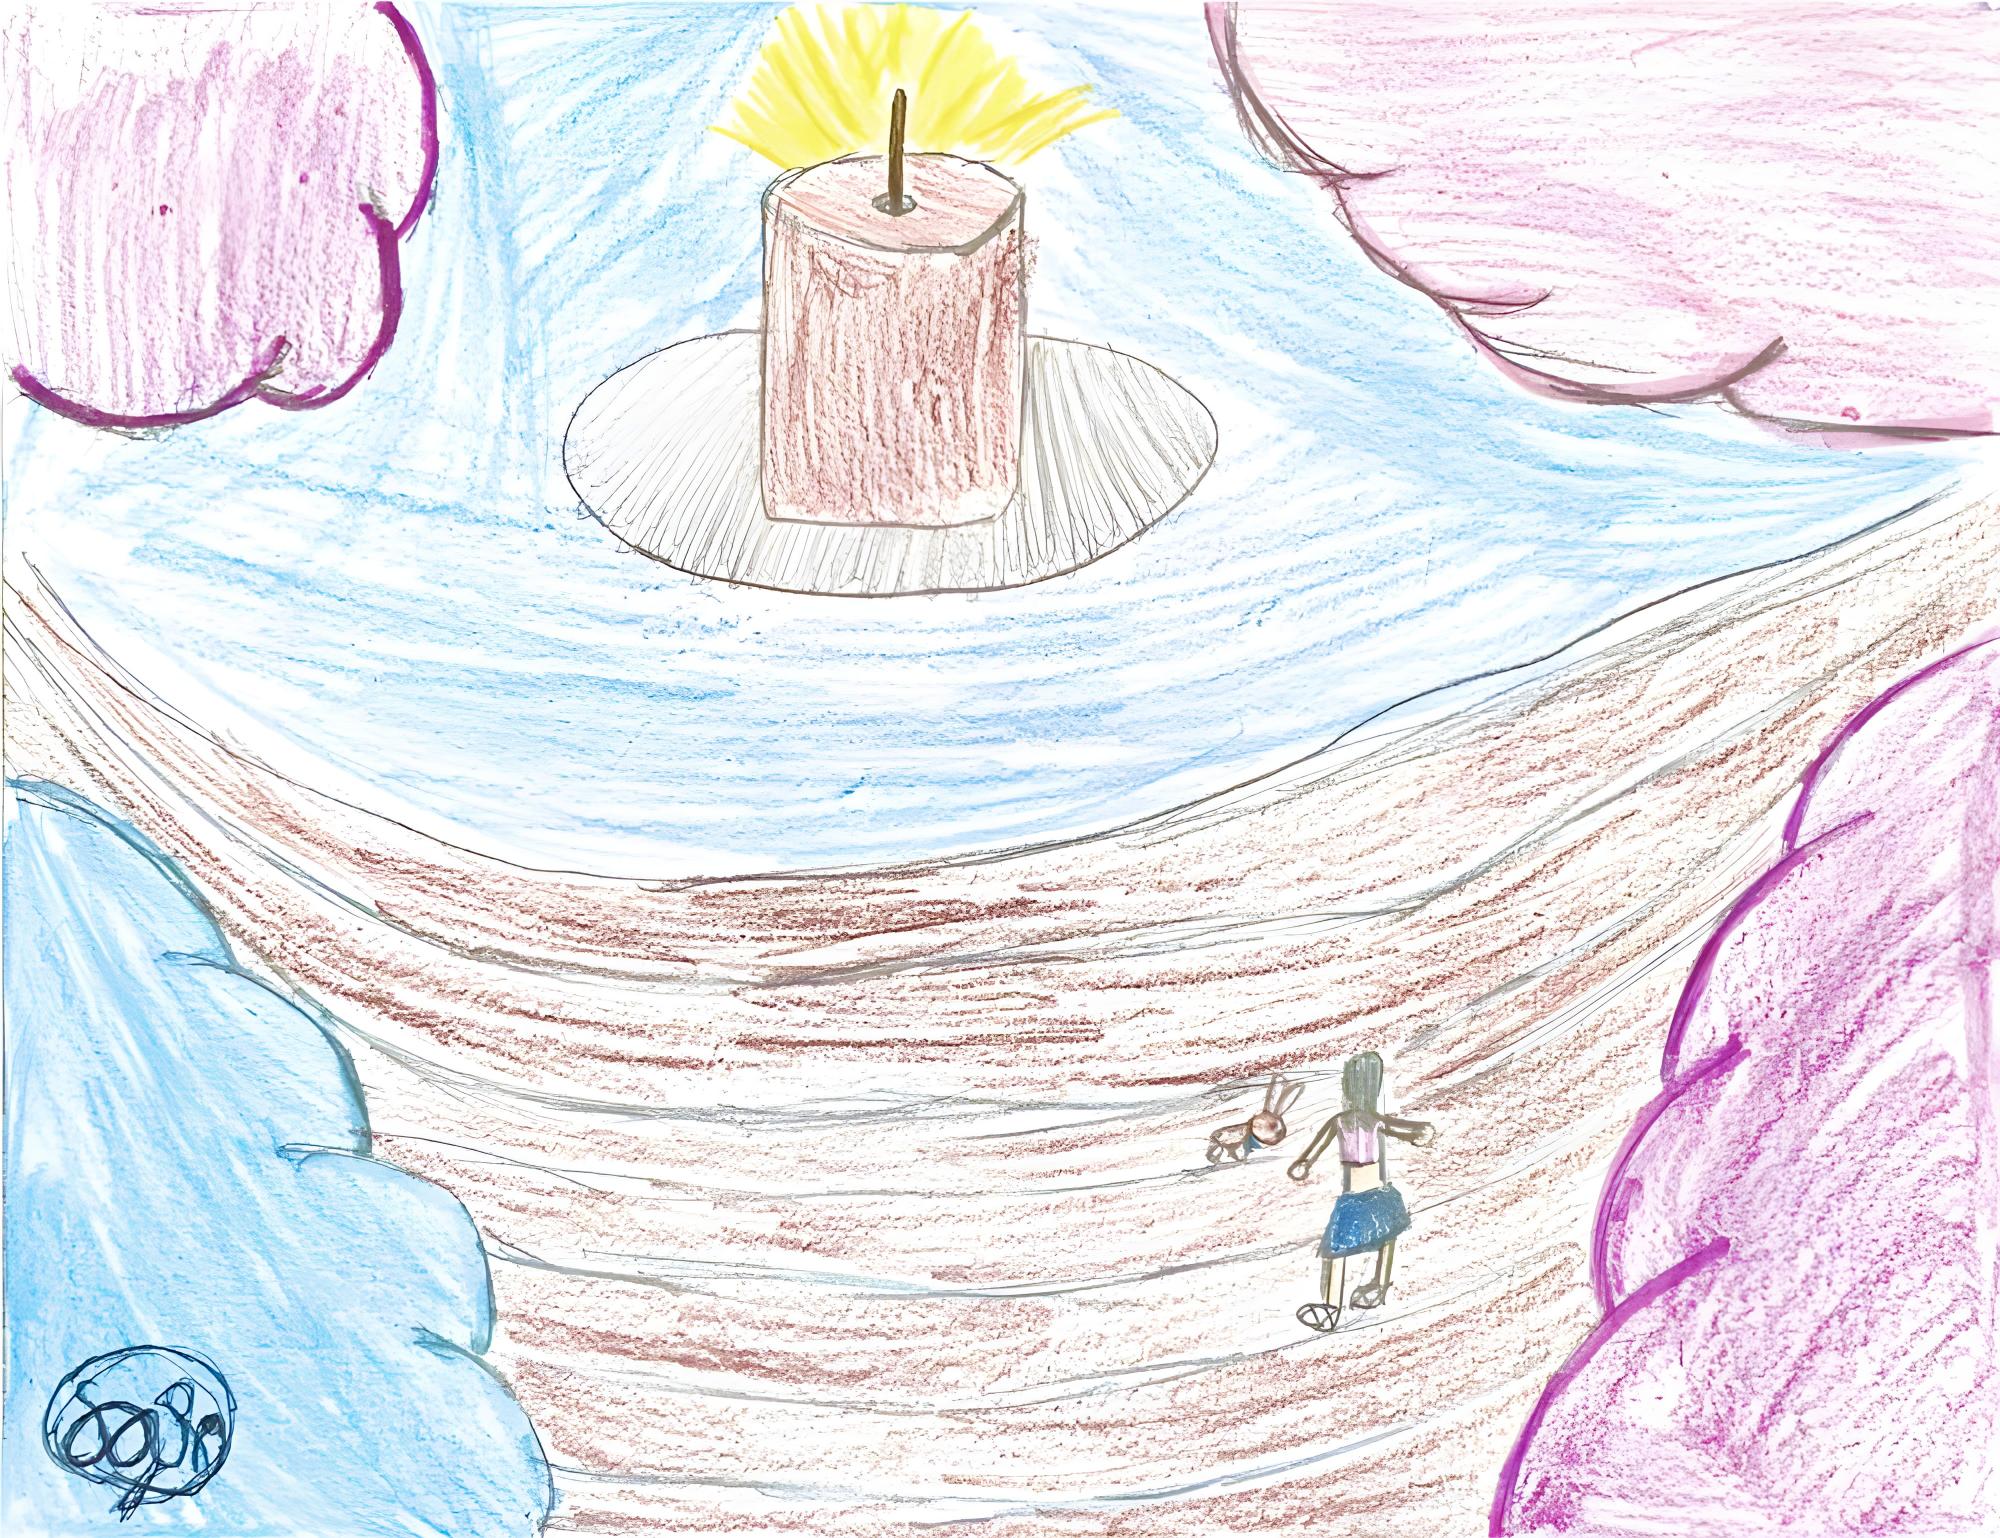 $!Después de hacer la trama de su historia, Sofía dibujo la escena en donde su protagonista y su mascota encuentran lo que necesitan para vencer al mal de su mundo: la varita de la luz.